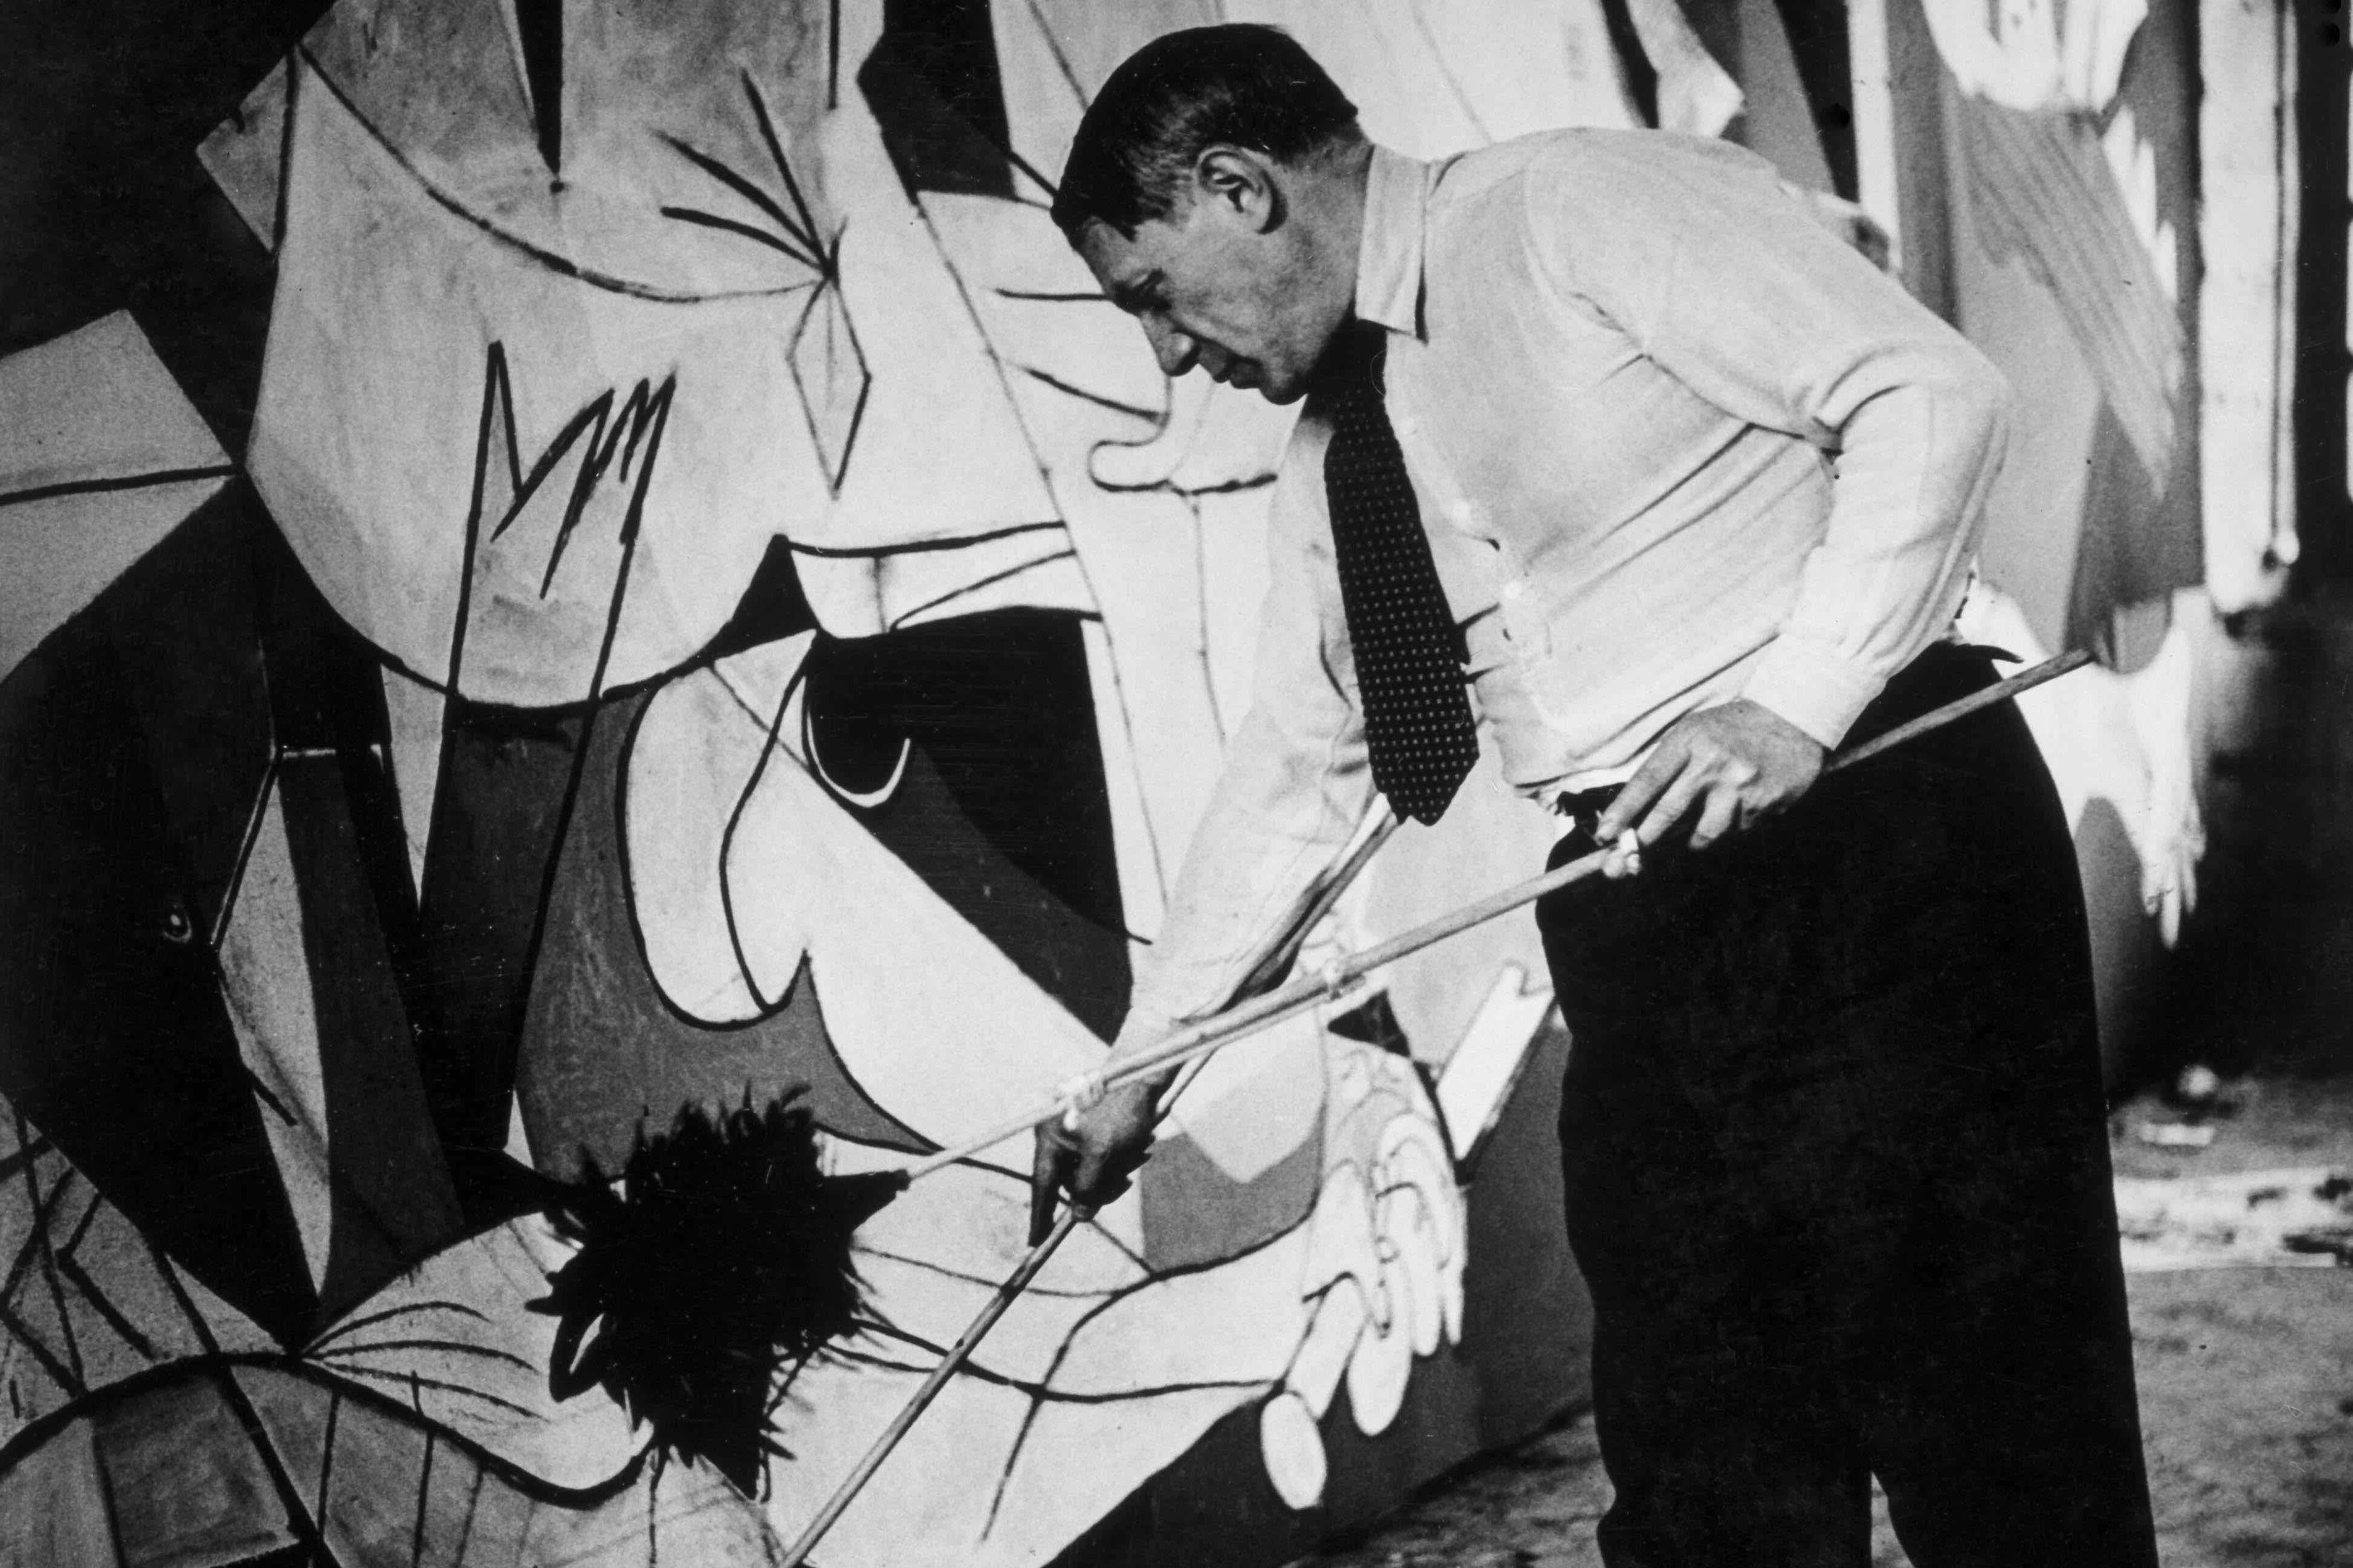 Пабло Пикассо работает над «Герникой» в своей мастерской, 1937 год. Фотограф Дора Маар